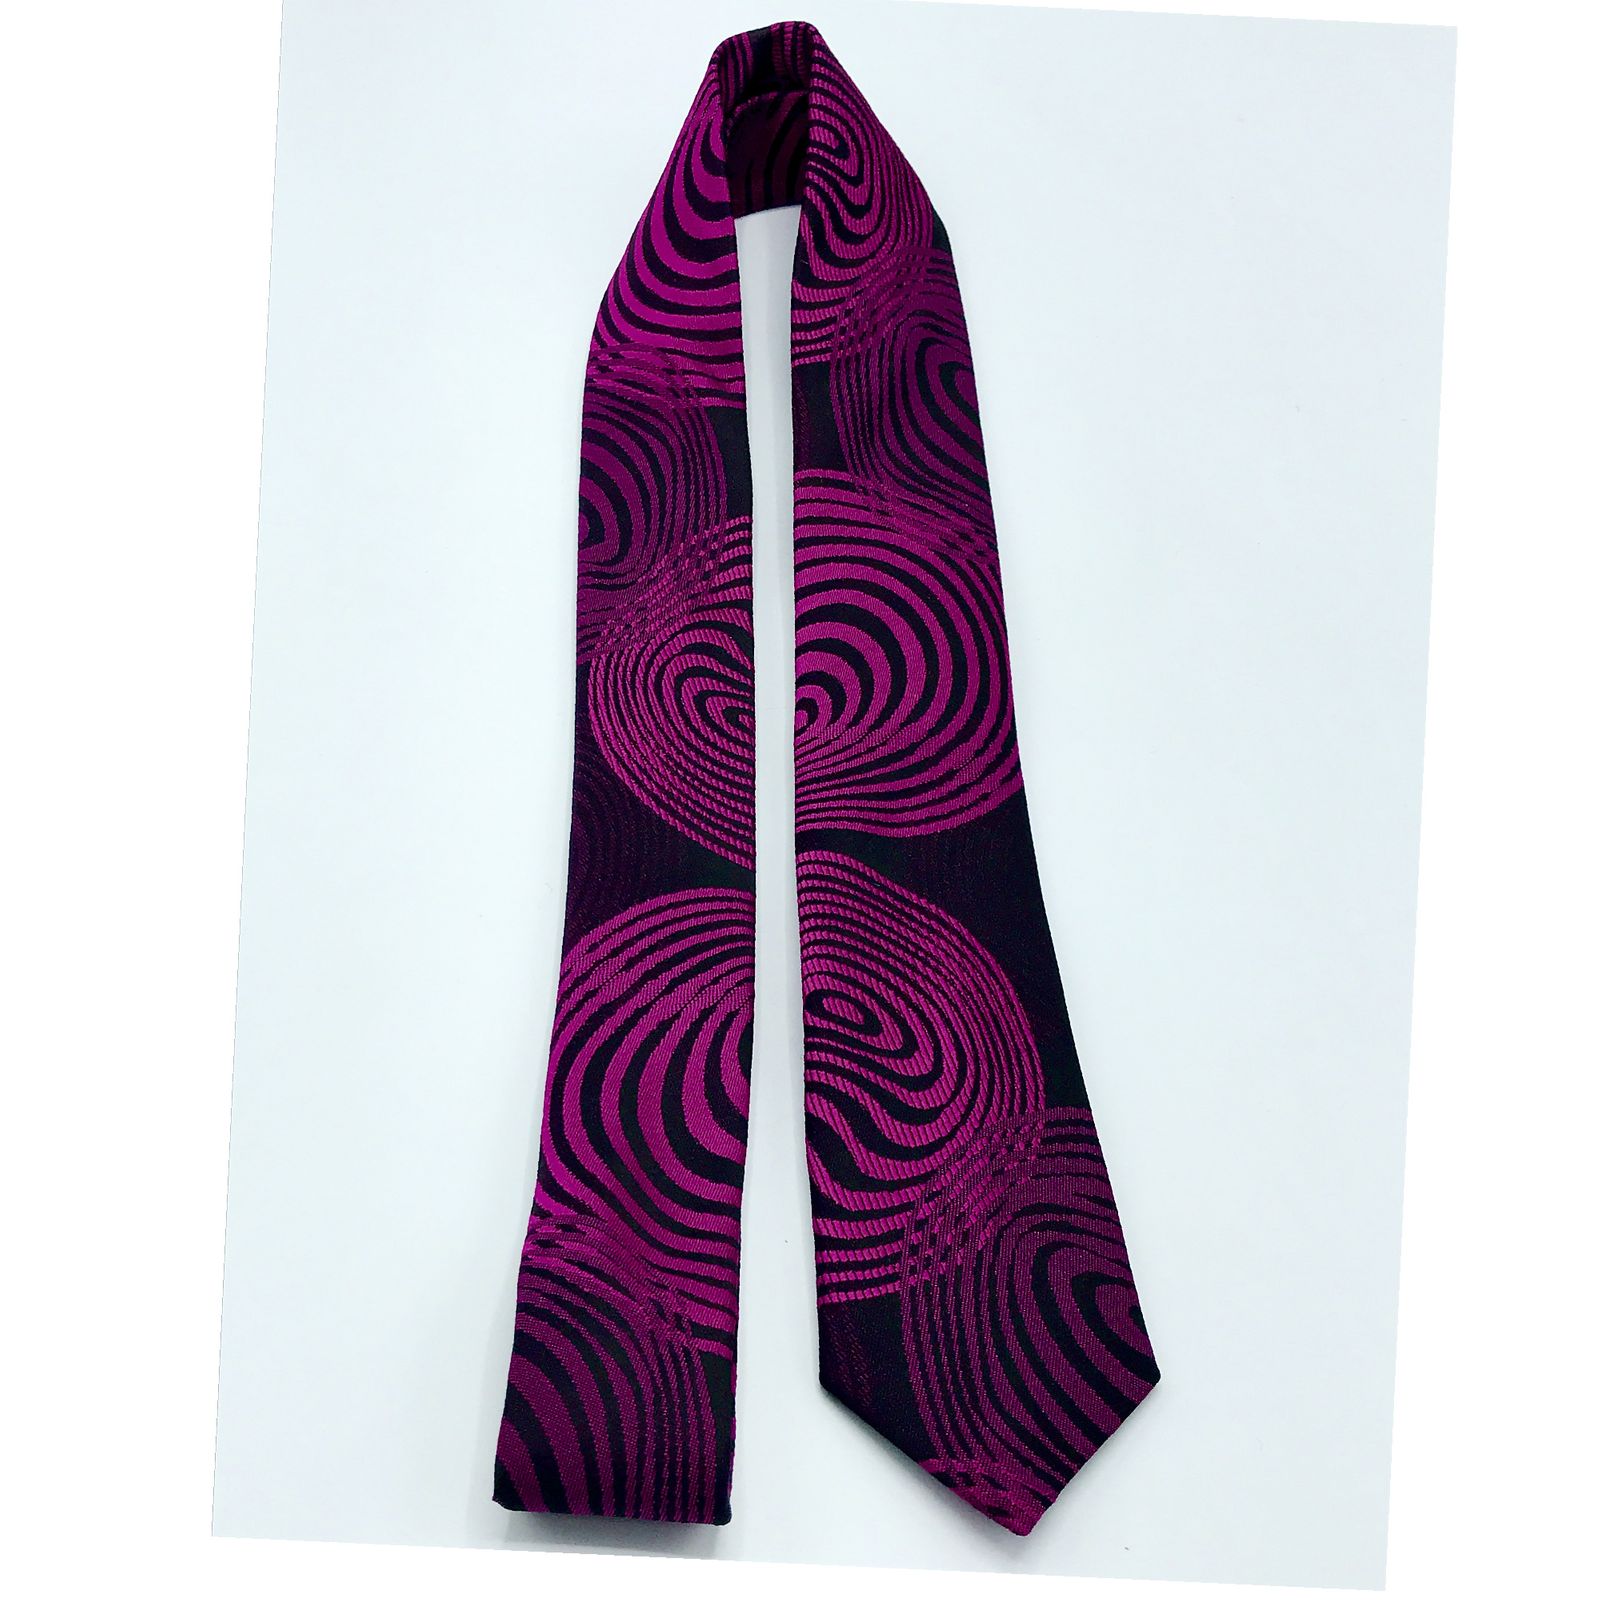  کراوات مردانه هکس ایران مدل KT-PRPL DYR -  - 2